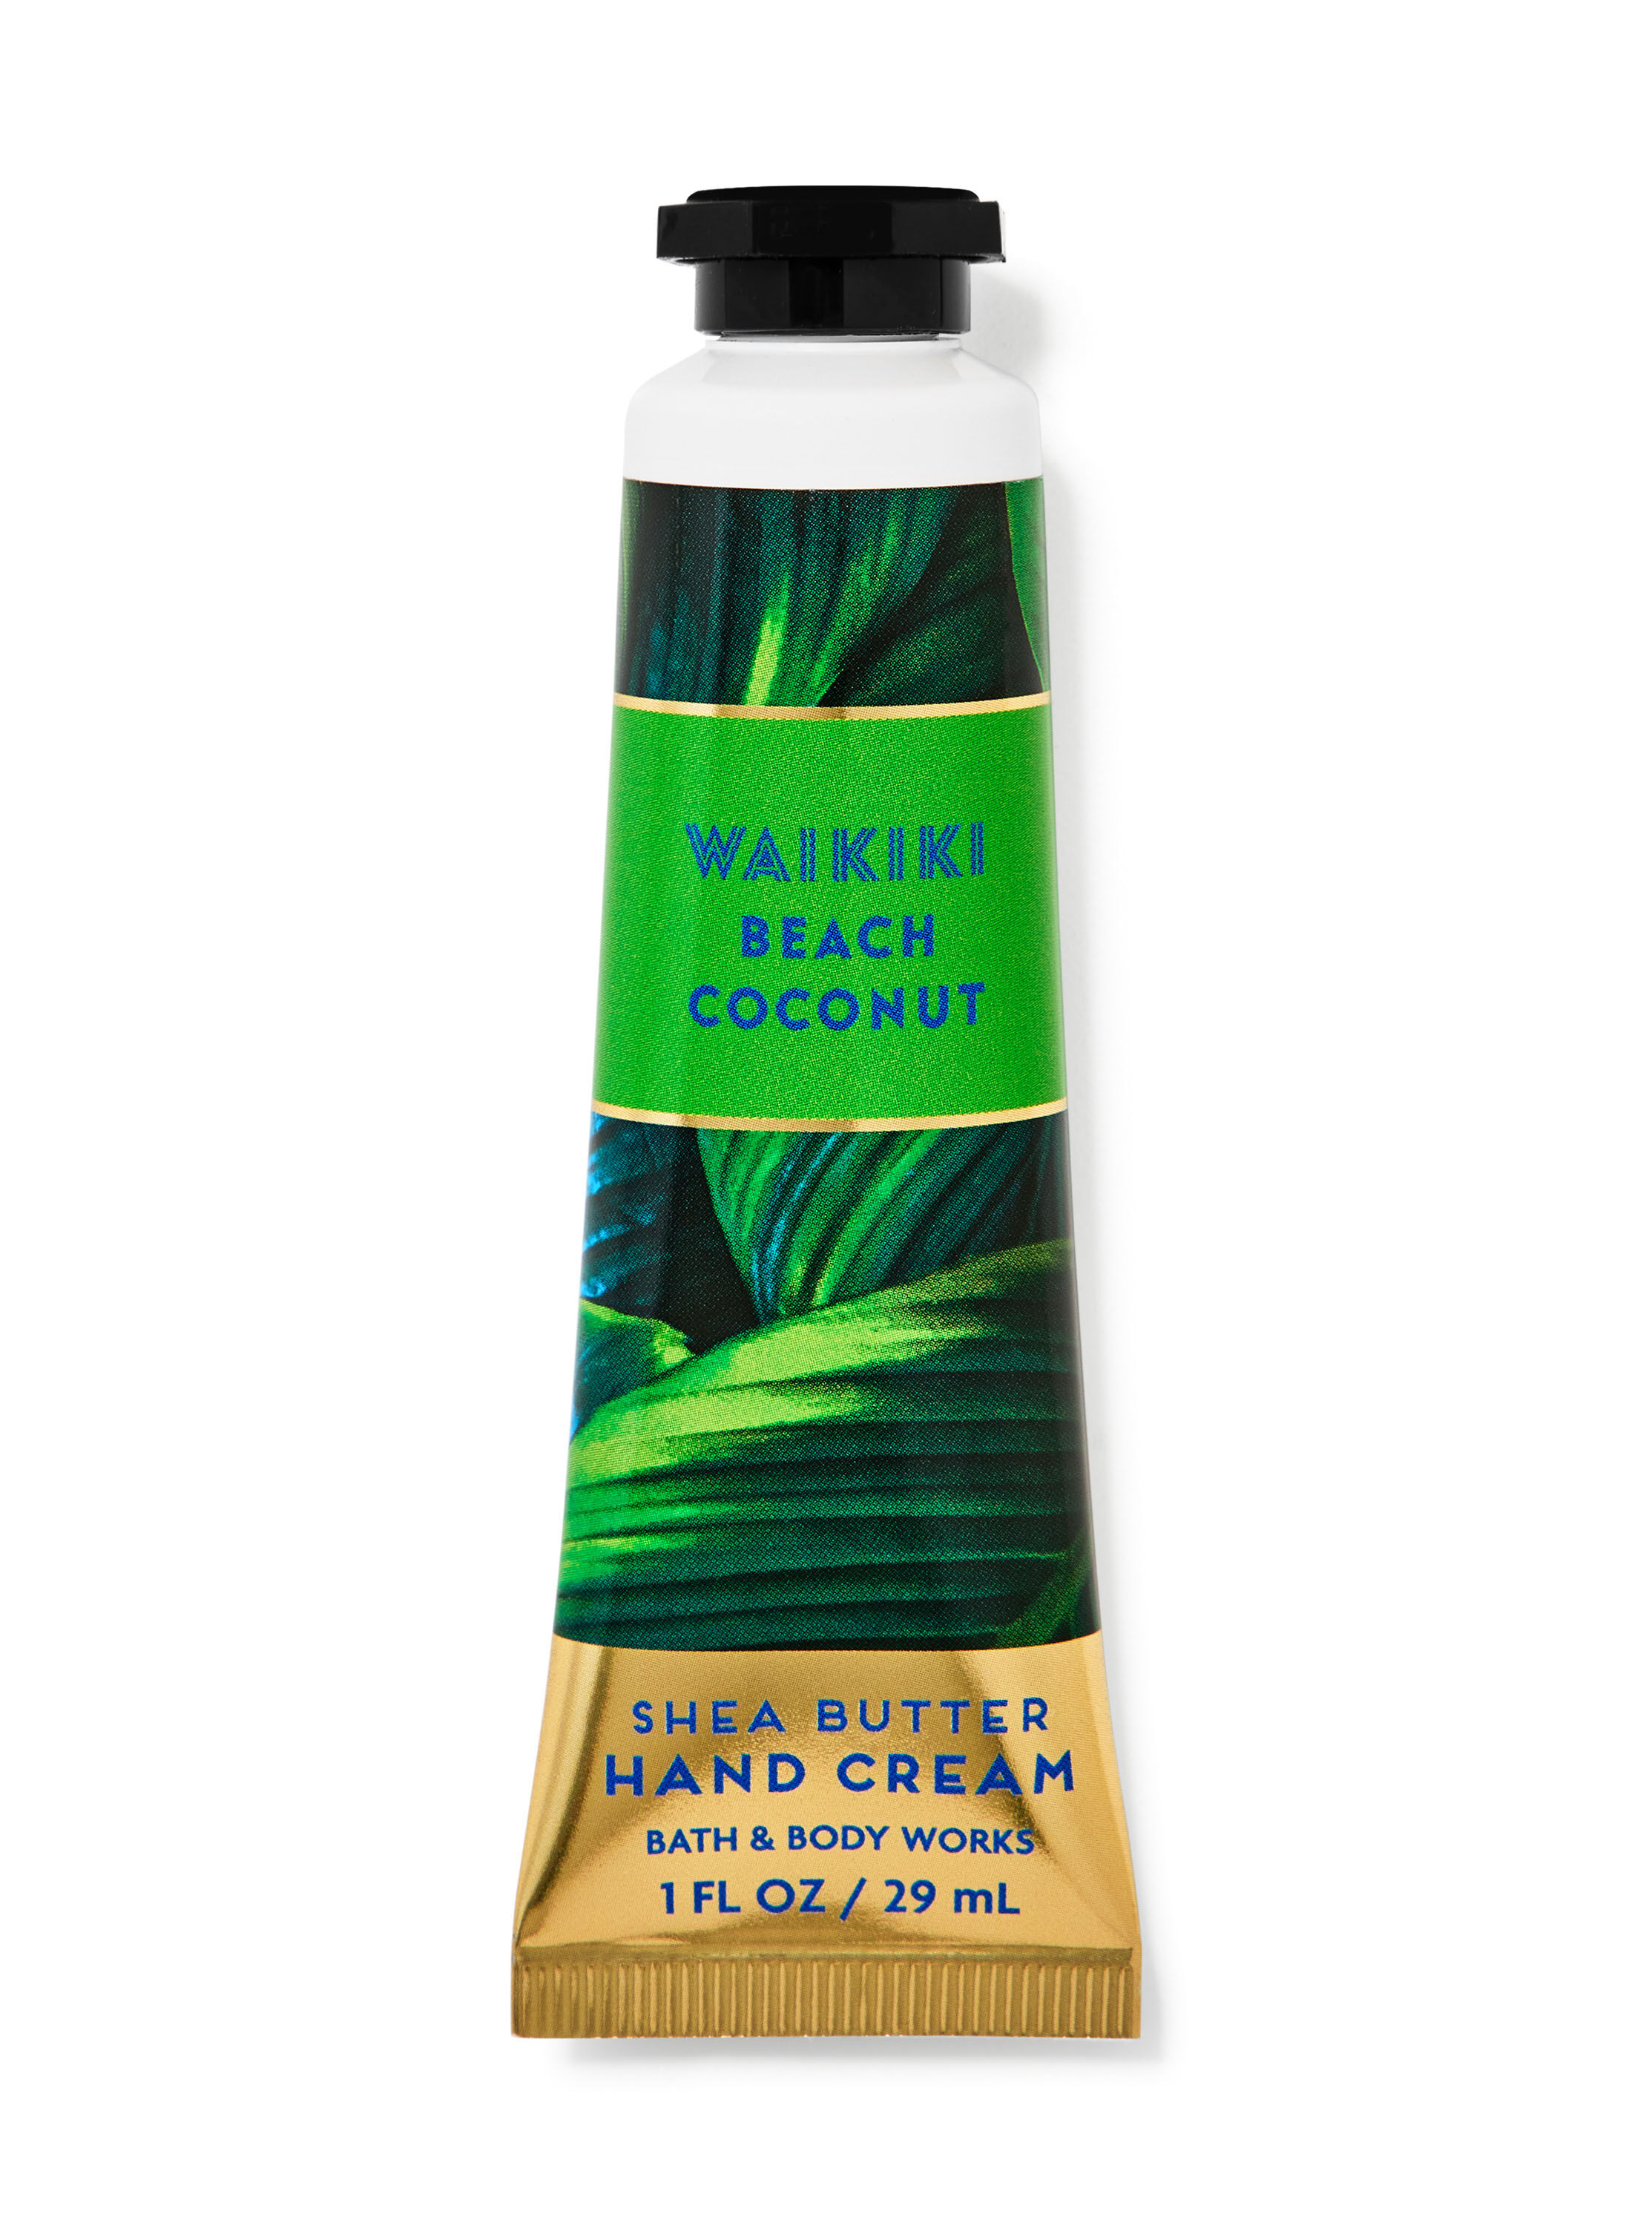 Waikiki Beach Coconut Hand Cream